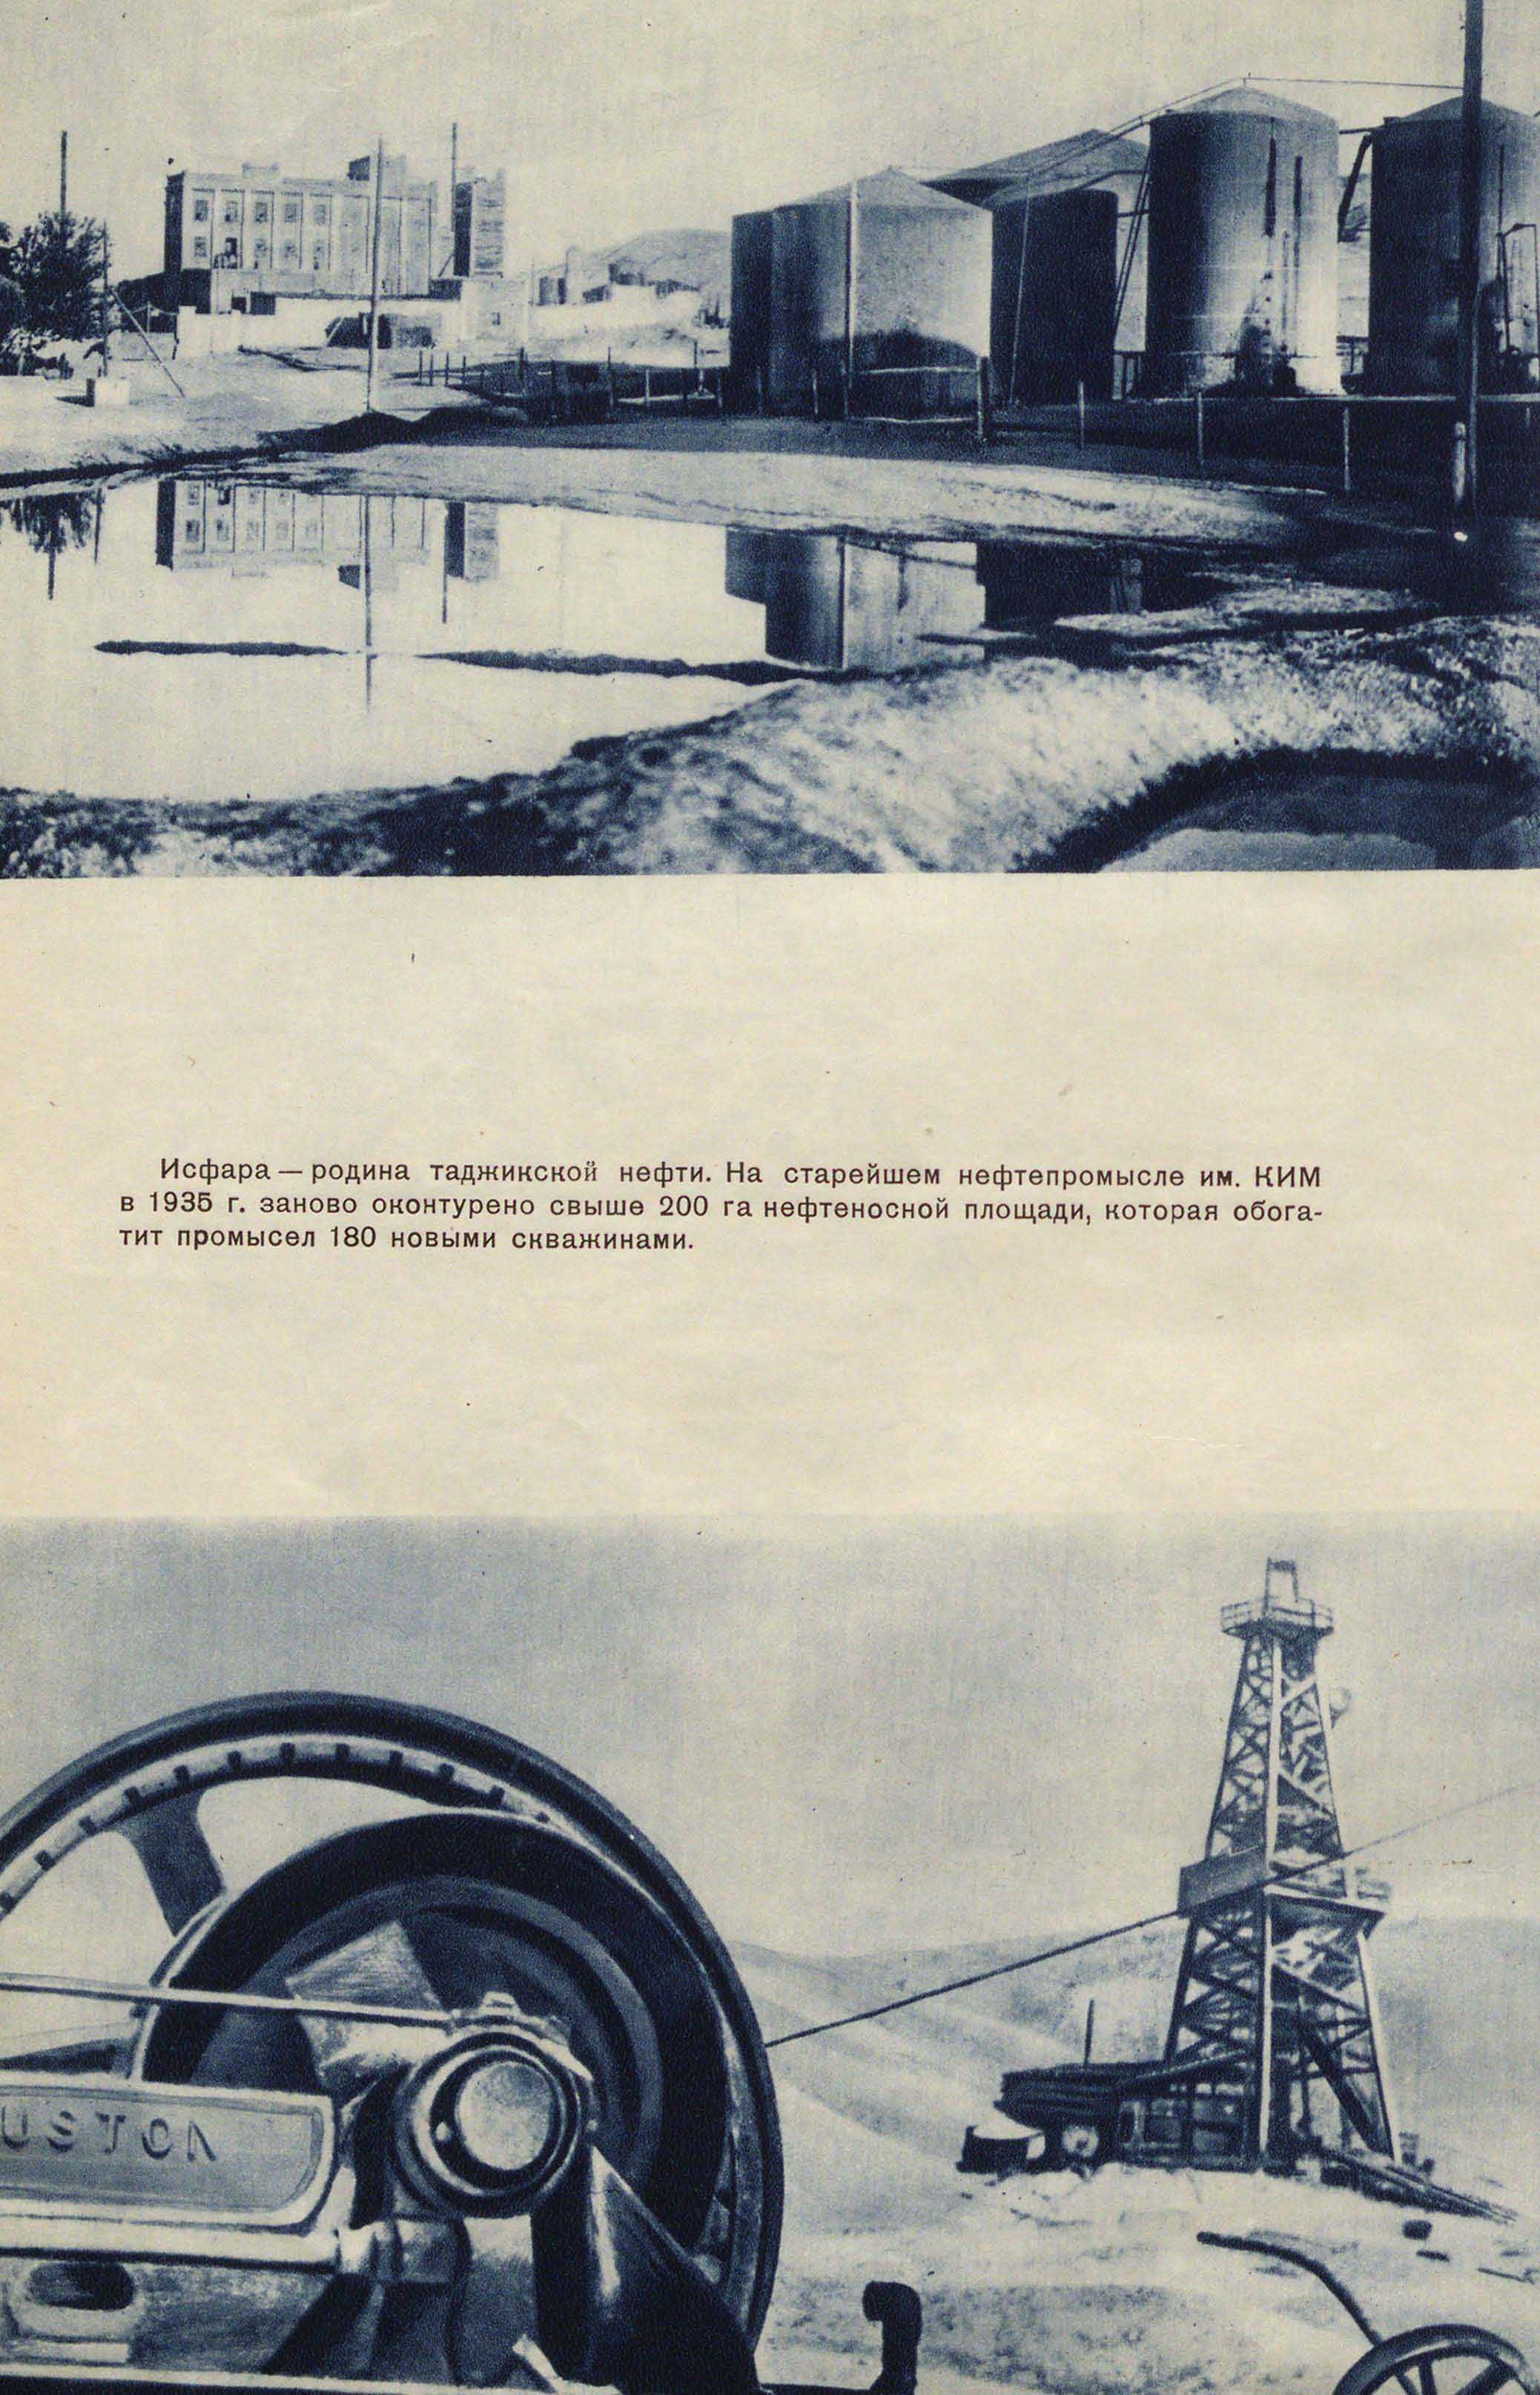 Исфара — родина таджикской нефти. На старейшем нефтепромысле им. КИМ в 1935 г. заново оконтурено свыше 200 га нефтеносной площади, которая обогатит промысел 180 новыми скважинами.